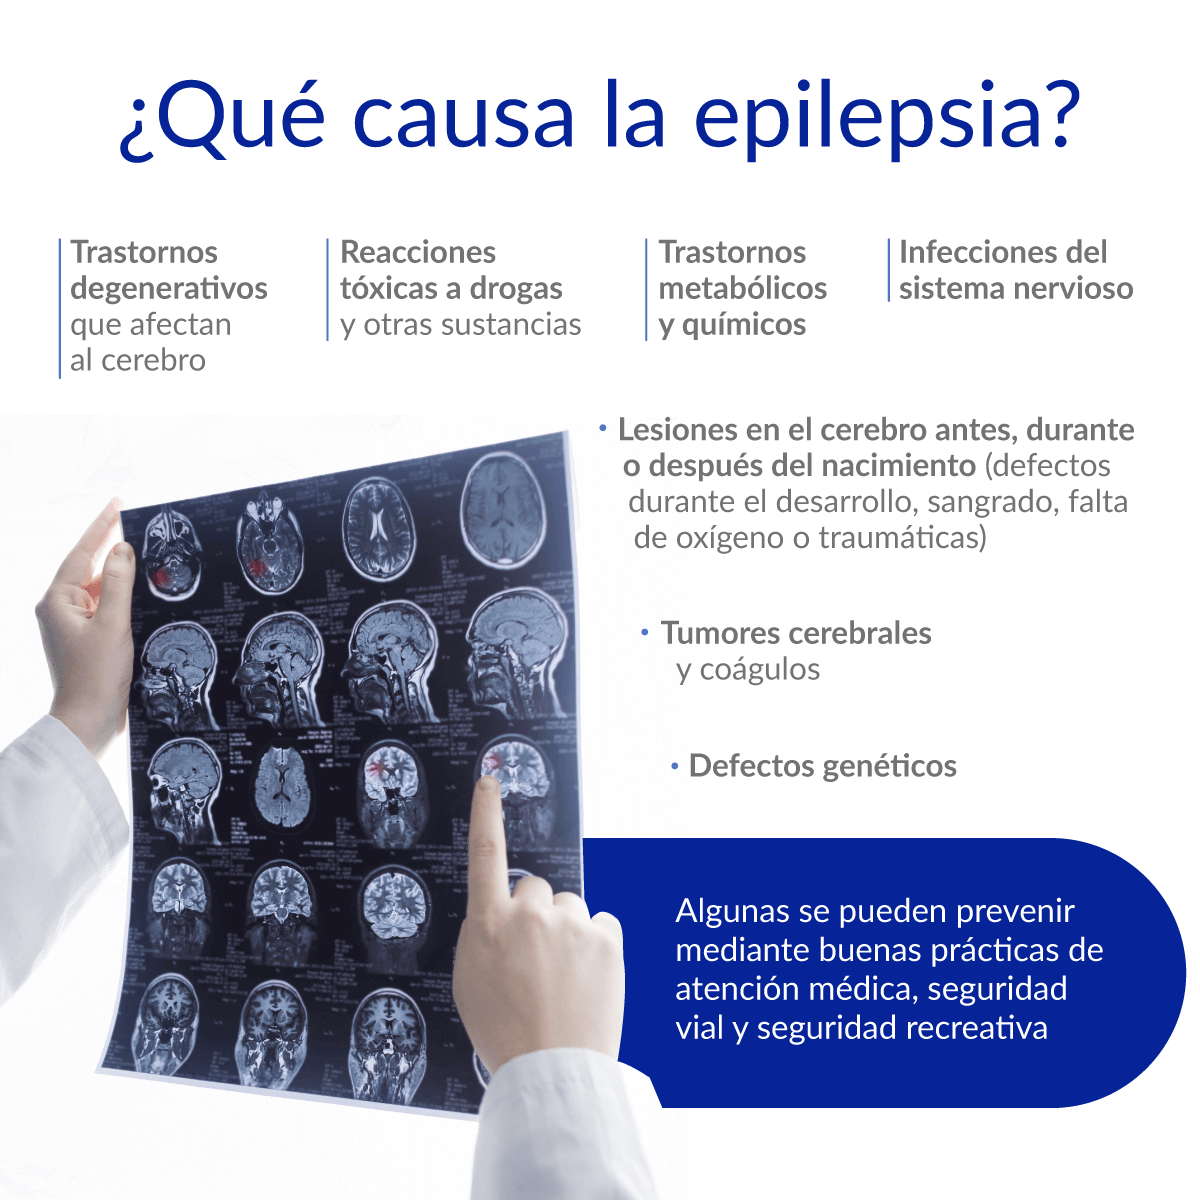 Qu causa epilepsia?